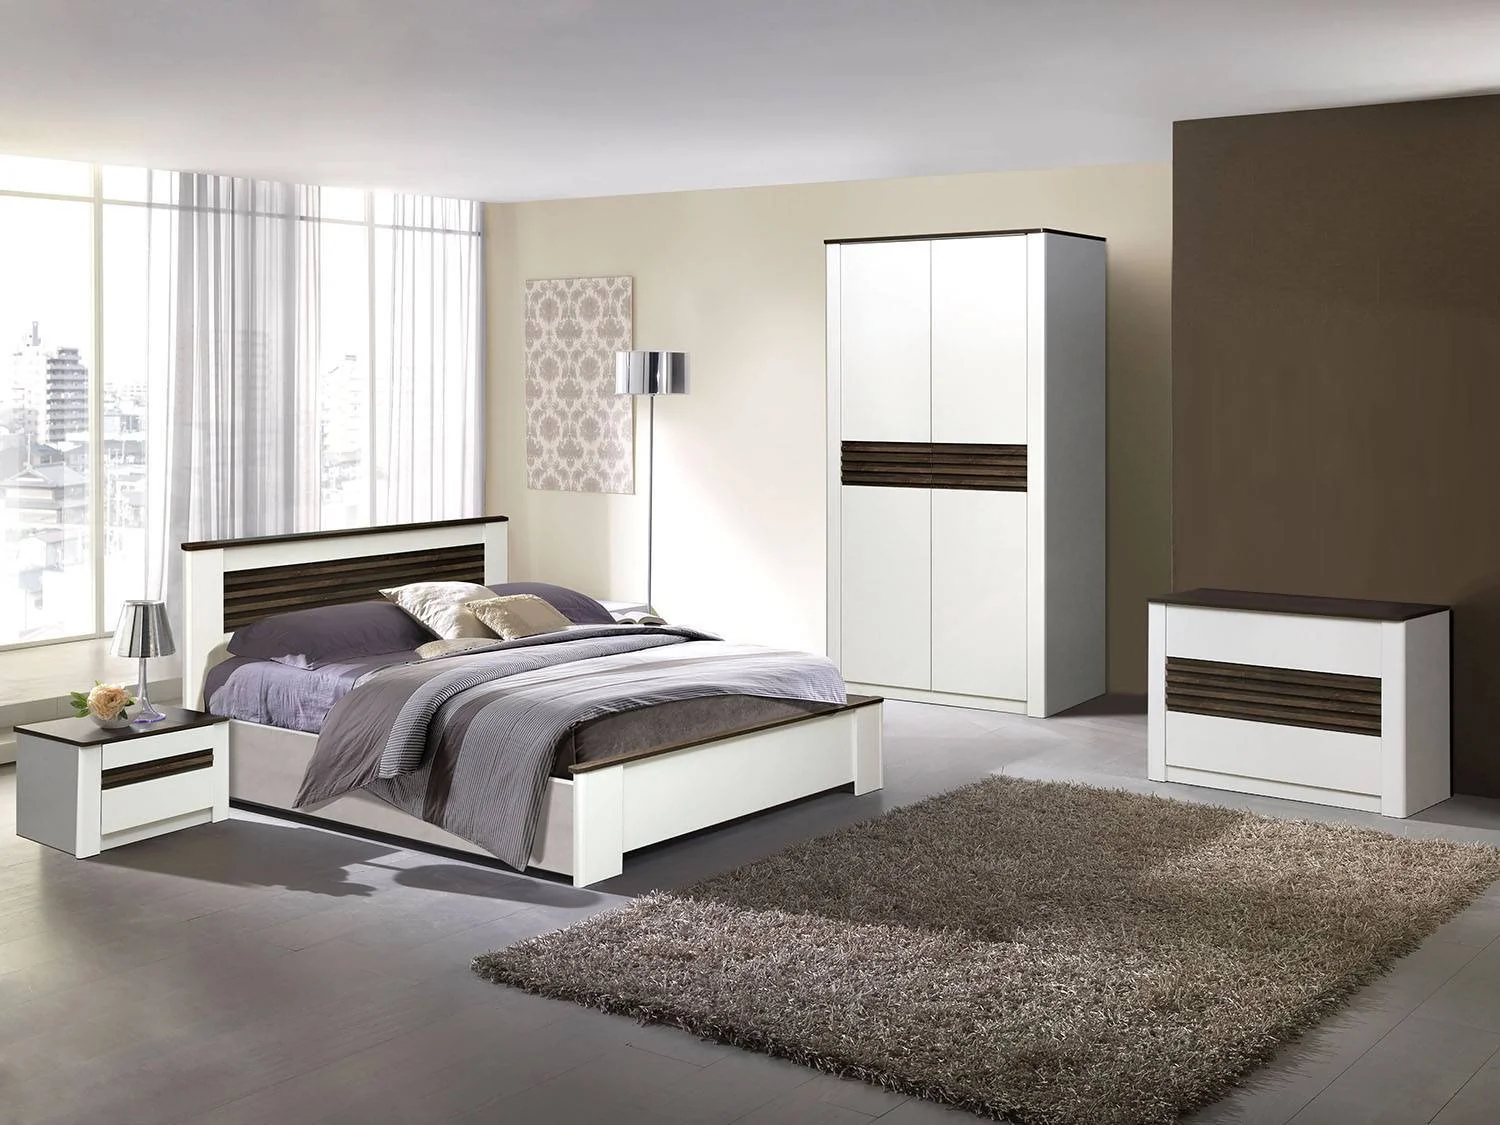 Новая модульная спальня по привлекательной цене